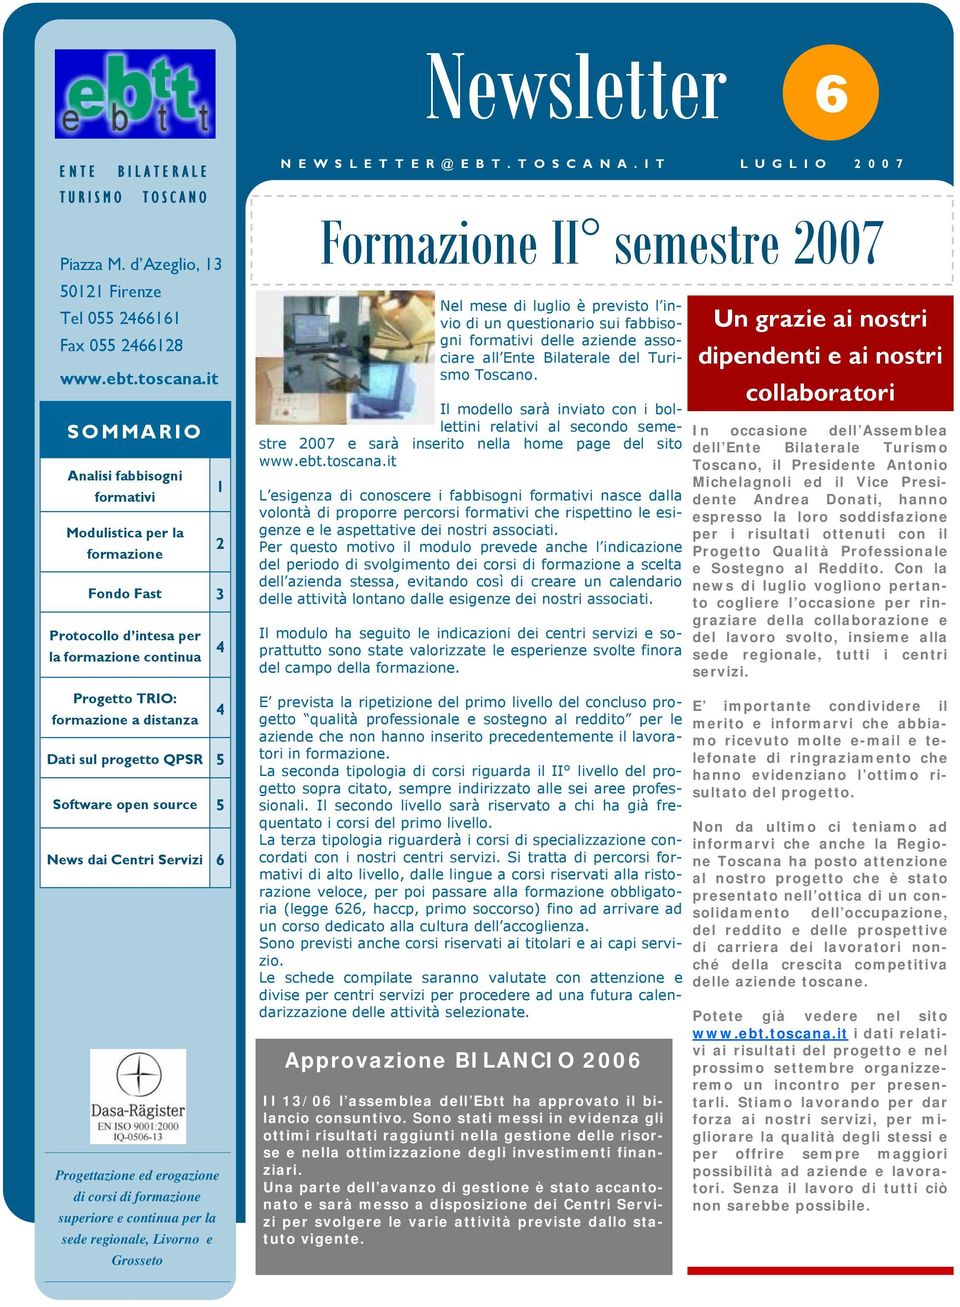 5 Software open source 5 News dai Centri Servizi 6 Progettazione ed erogazione di corsi di formazione superiore e continua per la sede regionale, Livorno e Grosseto N E W S L E T T E R @ E B T.